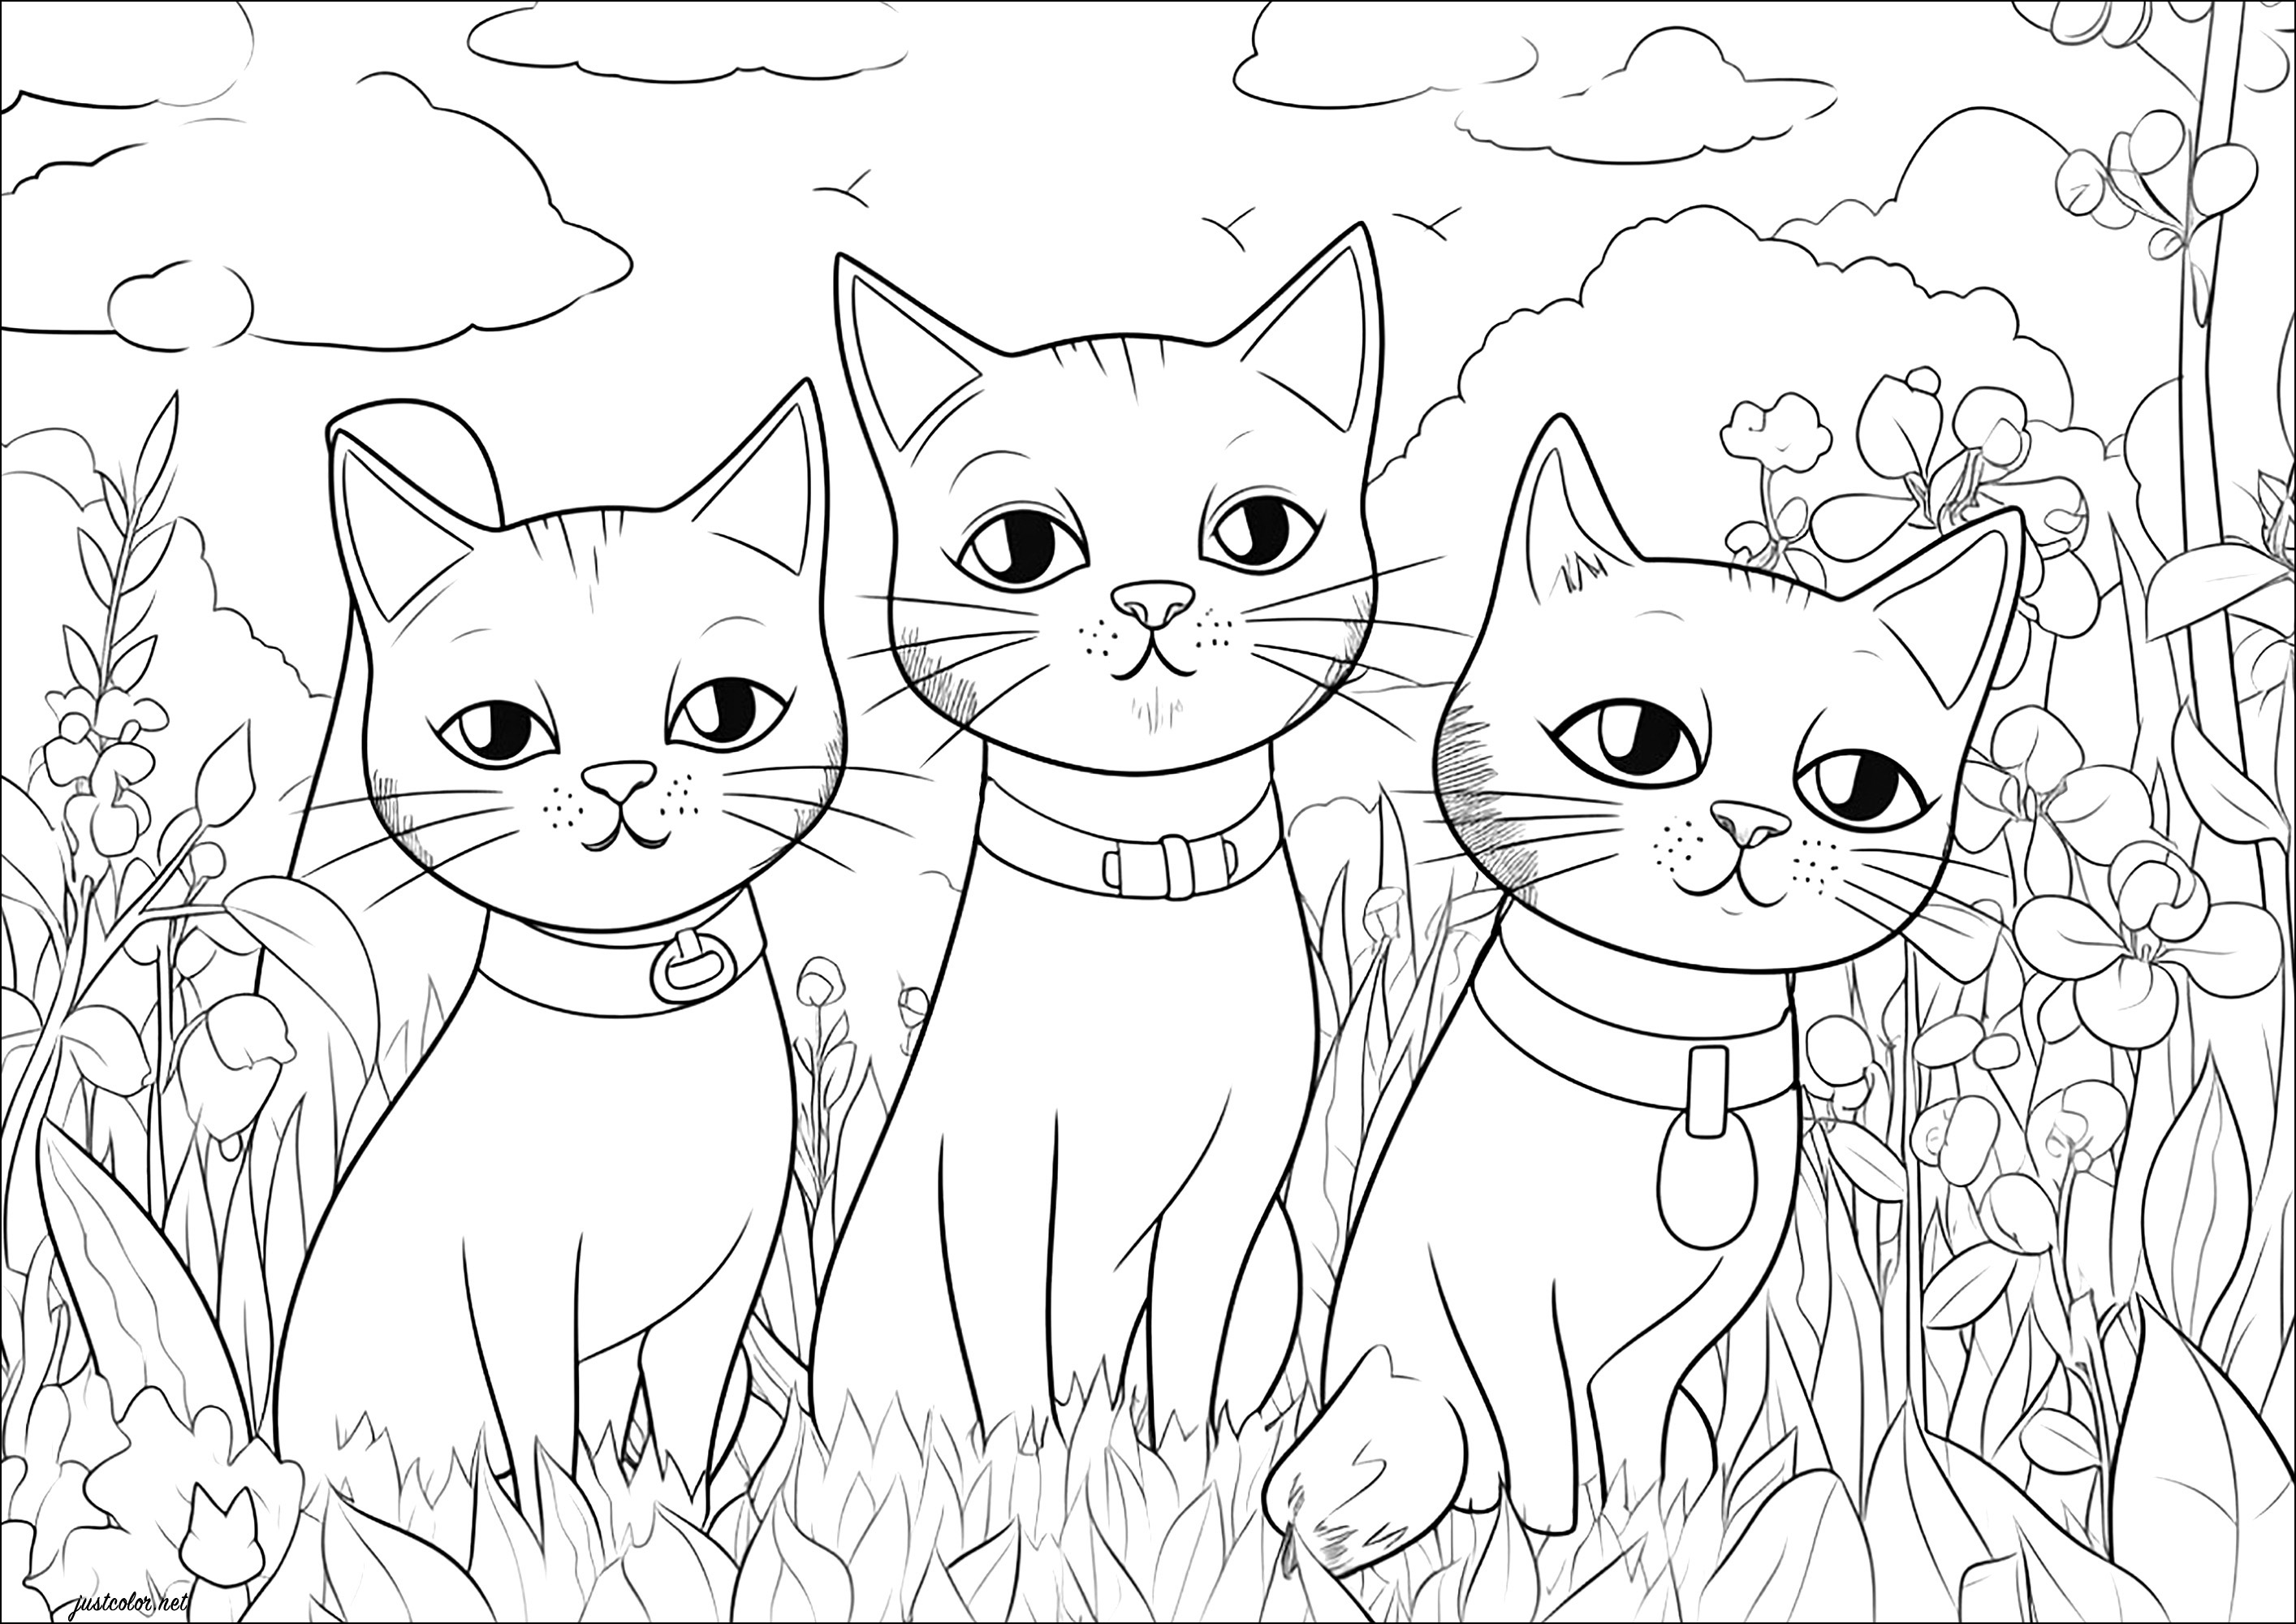 Tre gatti che ti fissano. Tre bei gatti dallo sguardo sdegnoso e tante piante da colorare sullo sfondo.